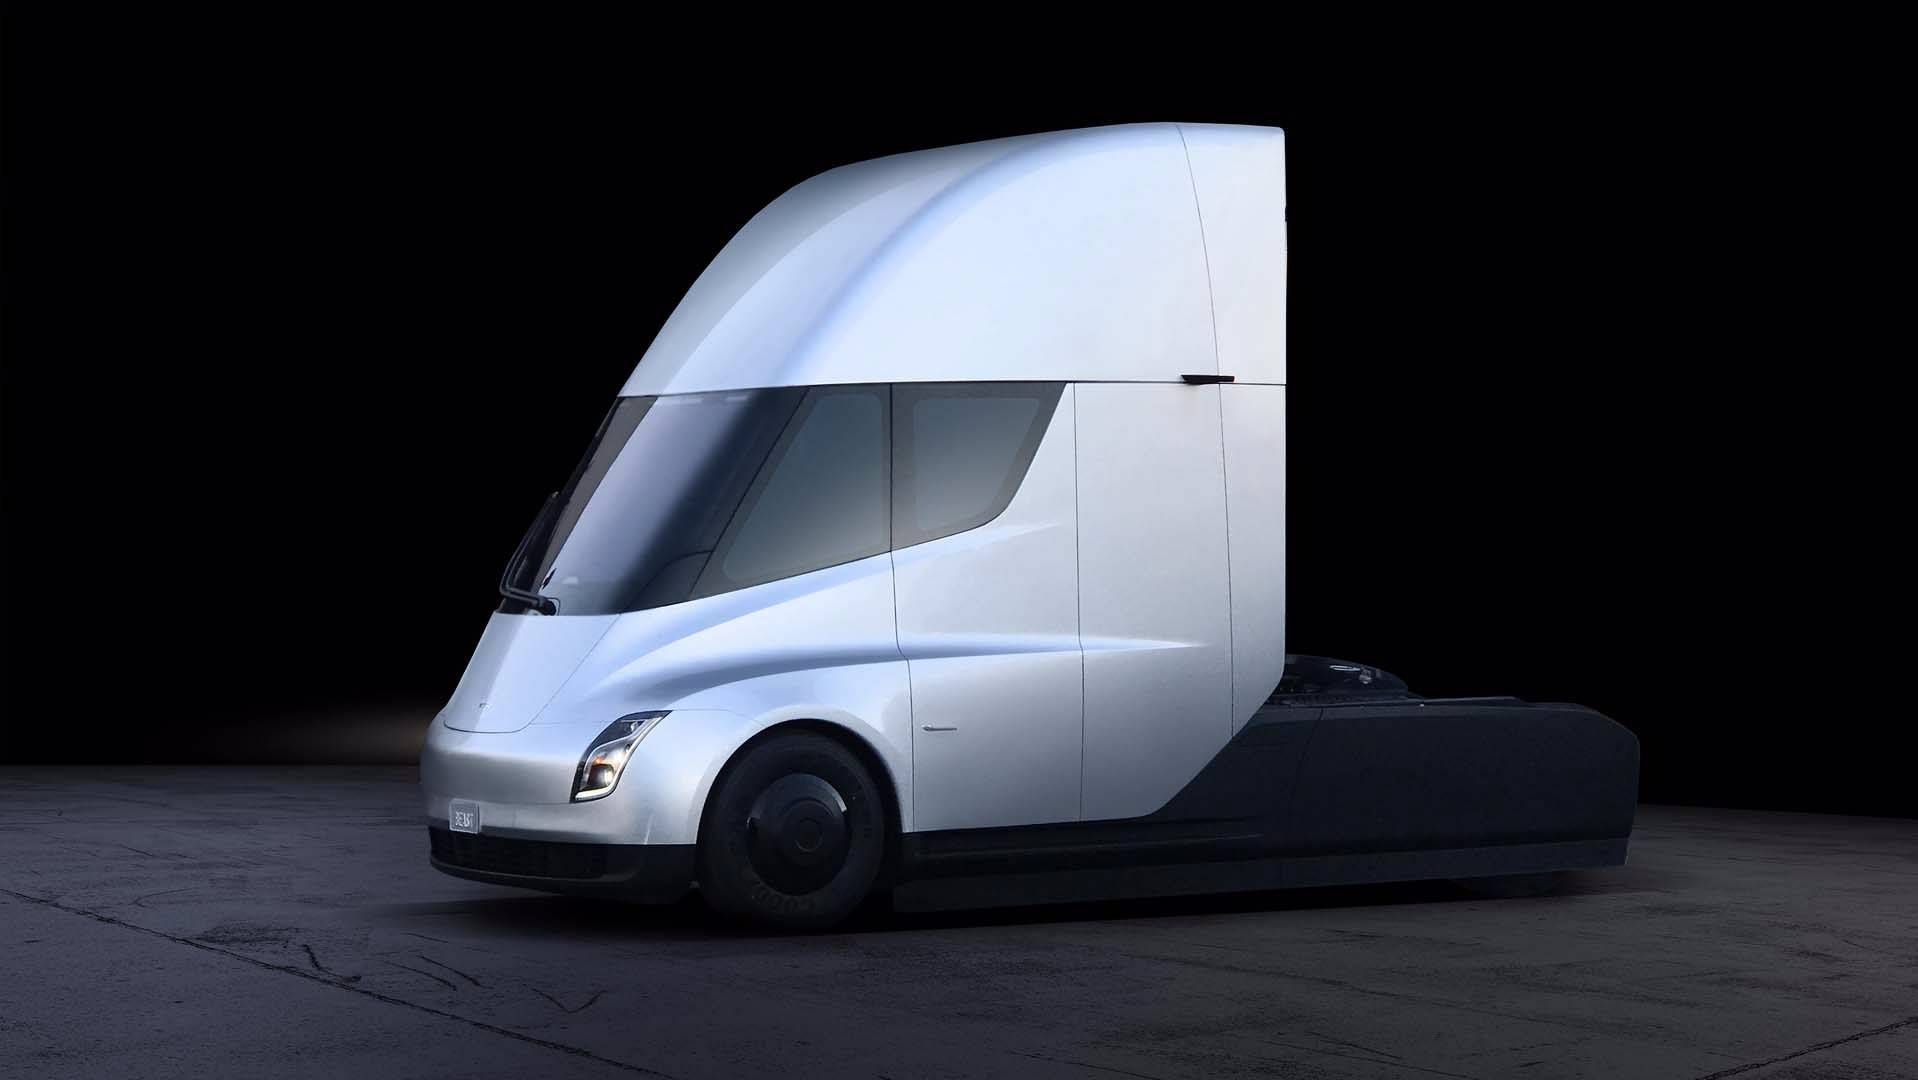 En 2020 empezará la producción del Tesla Semi, un camión eléctrico